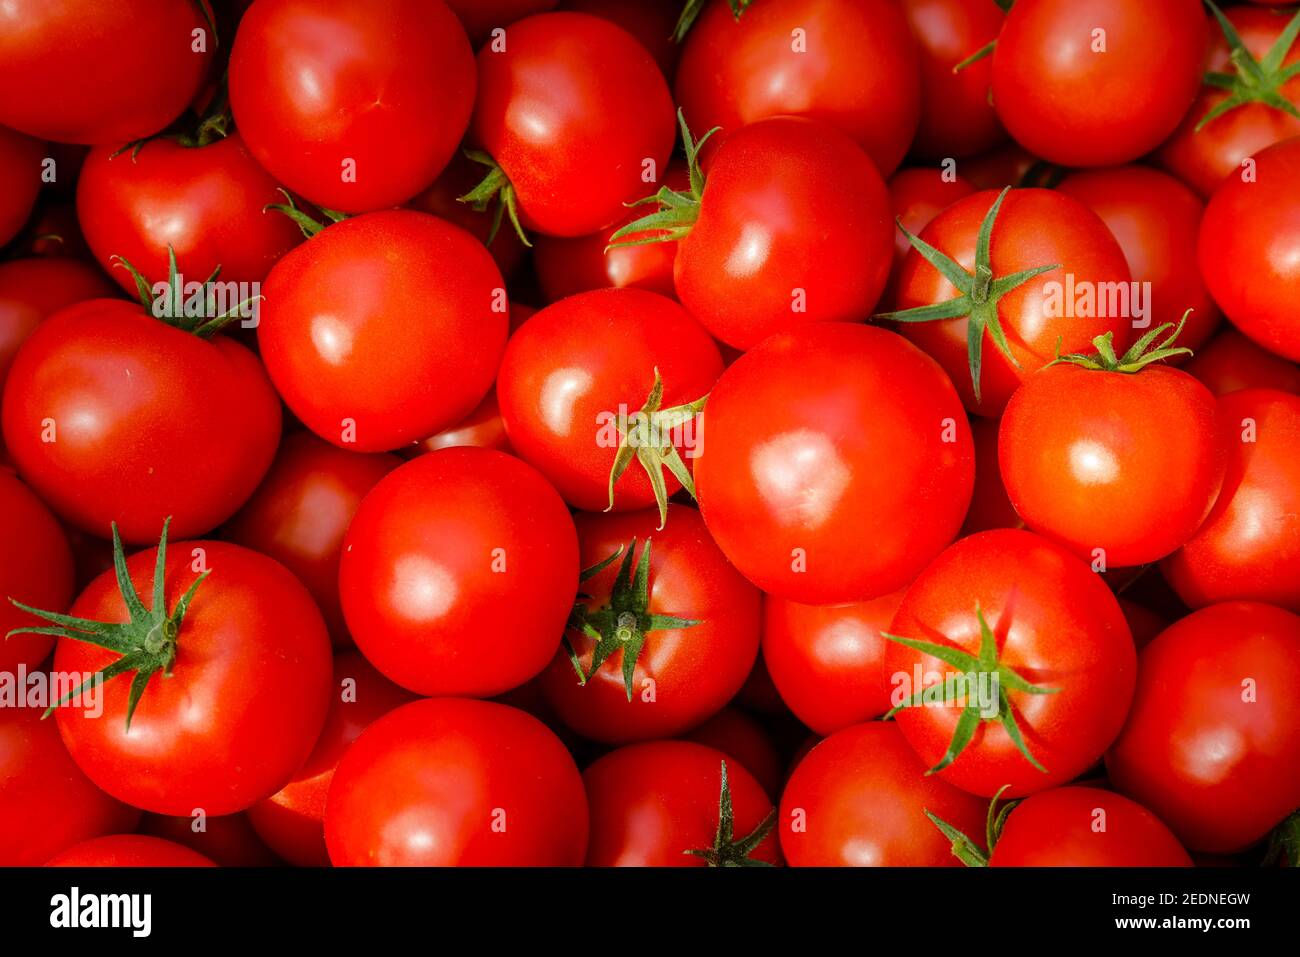 17,08.2020, Wittichenau, Sachsen, Deutschland - Tomatenernte auf dem Domanja-Hof, reife Tomaten im Karton. 00X200817D008CAROEX.JPG [MODELLVERSION: Stockfoto